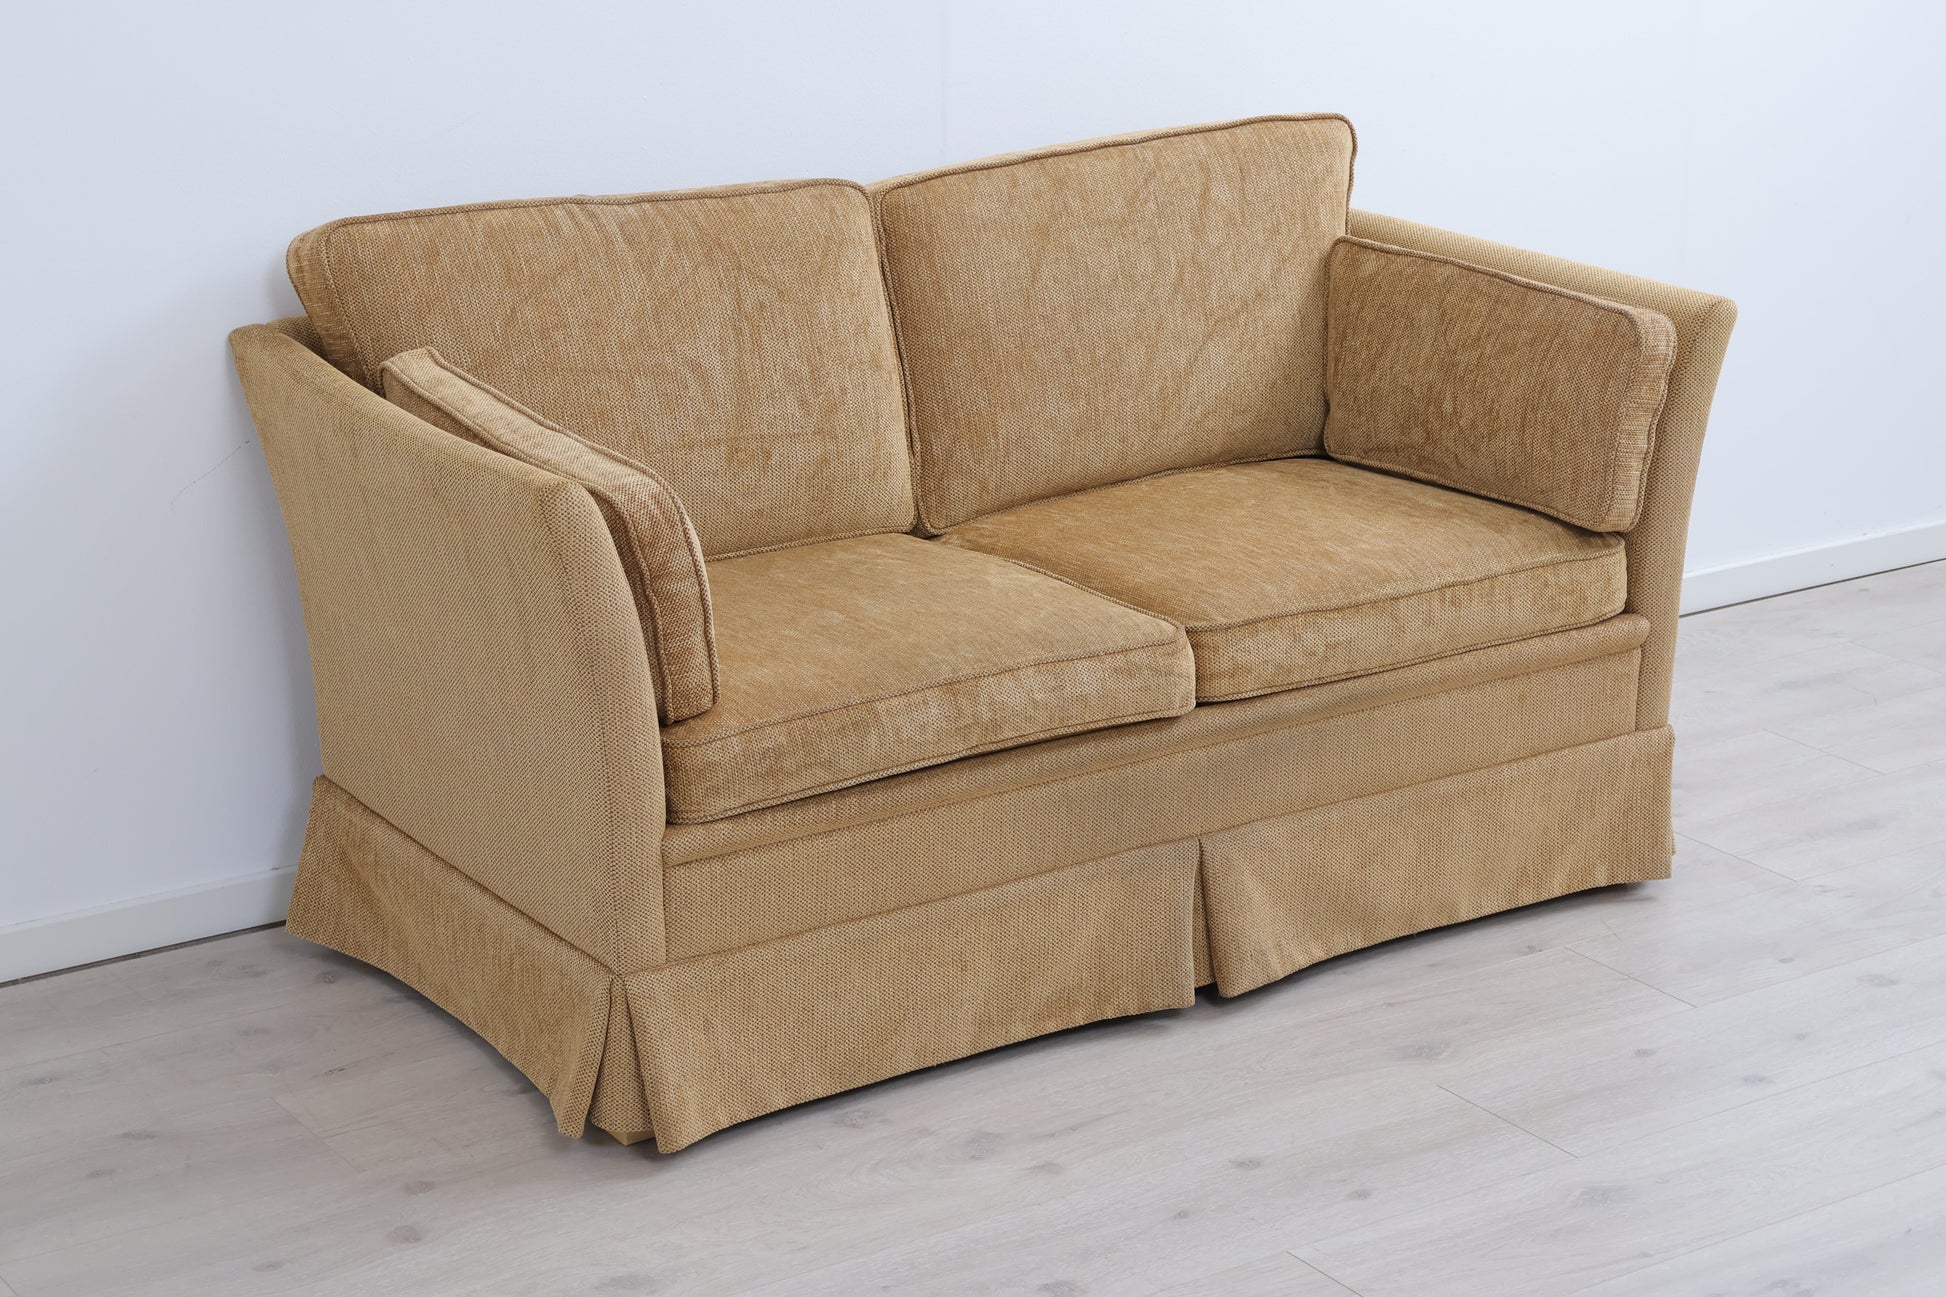 Nyrenset | Hødnebø 2-seter sofa i klassisk stil